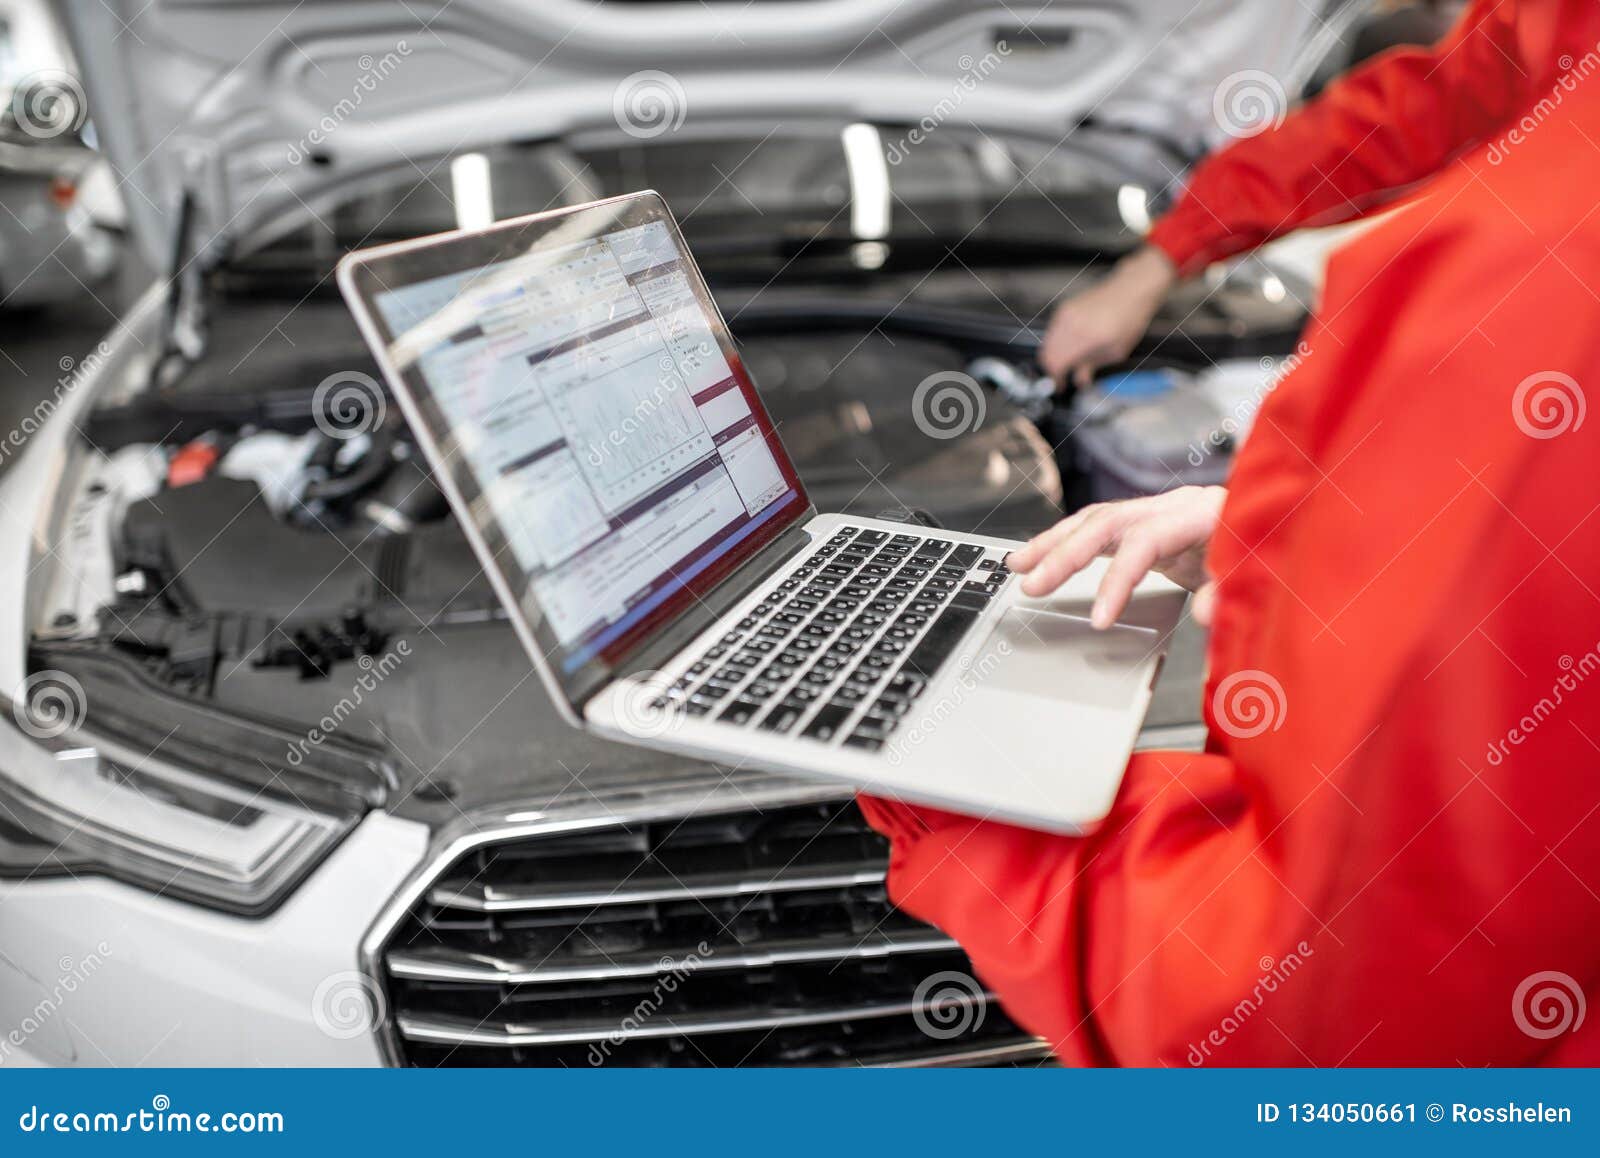 auto mechanics doing diagnostics with laptop